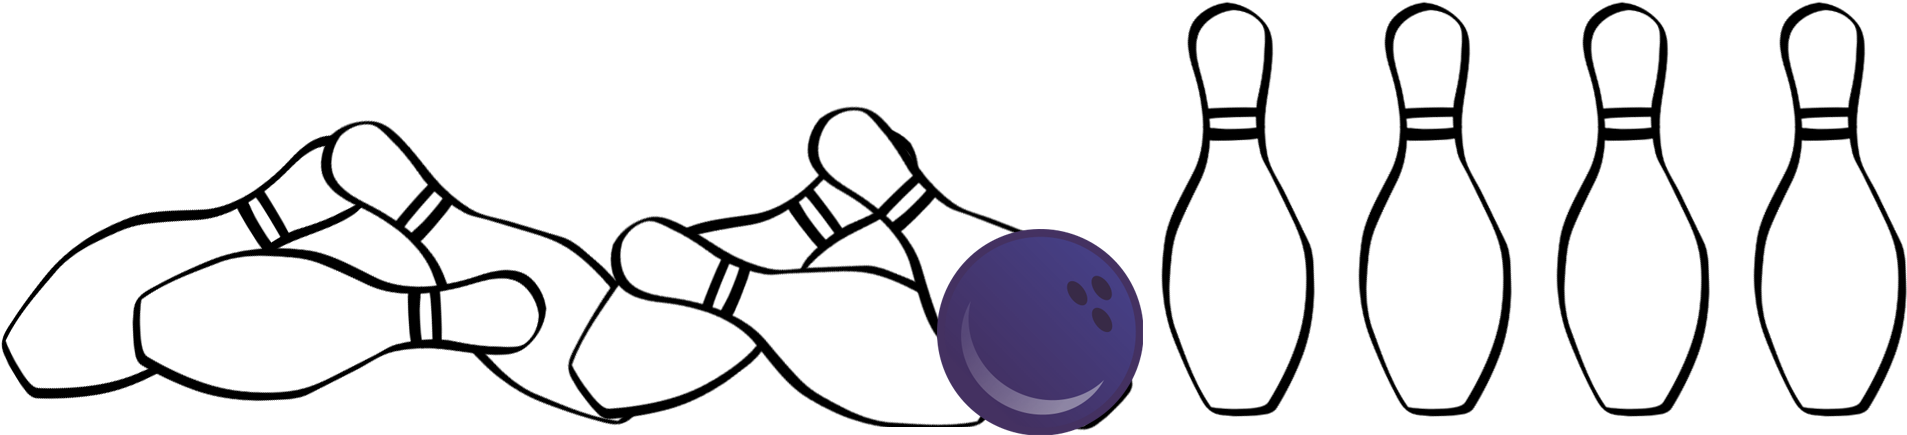 Ten-pin Bowling (1907x435), Png Download